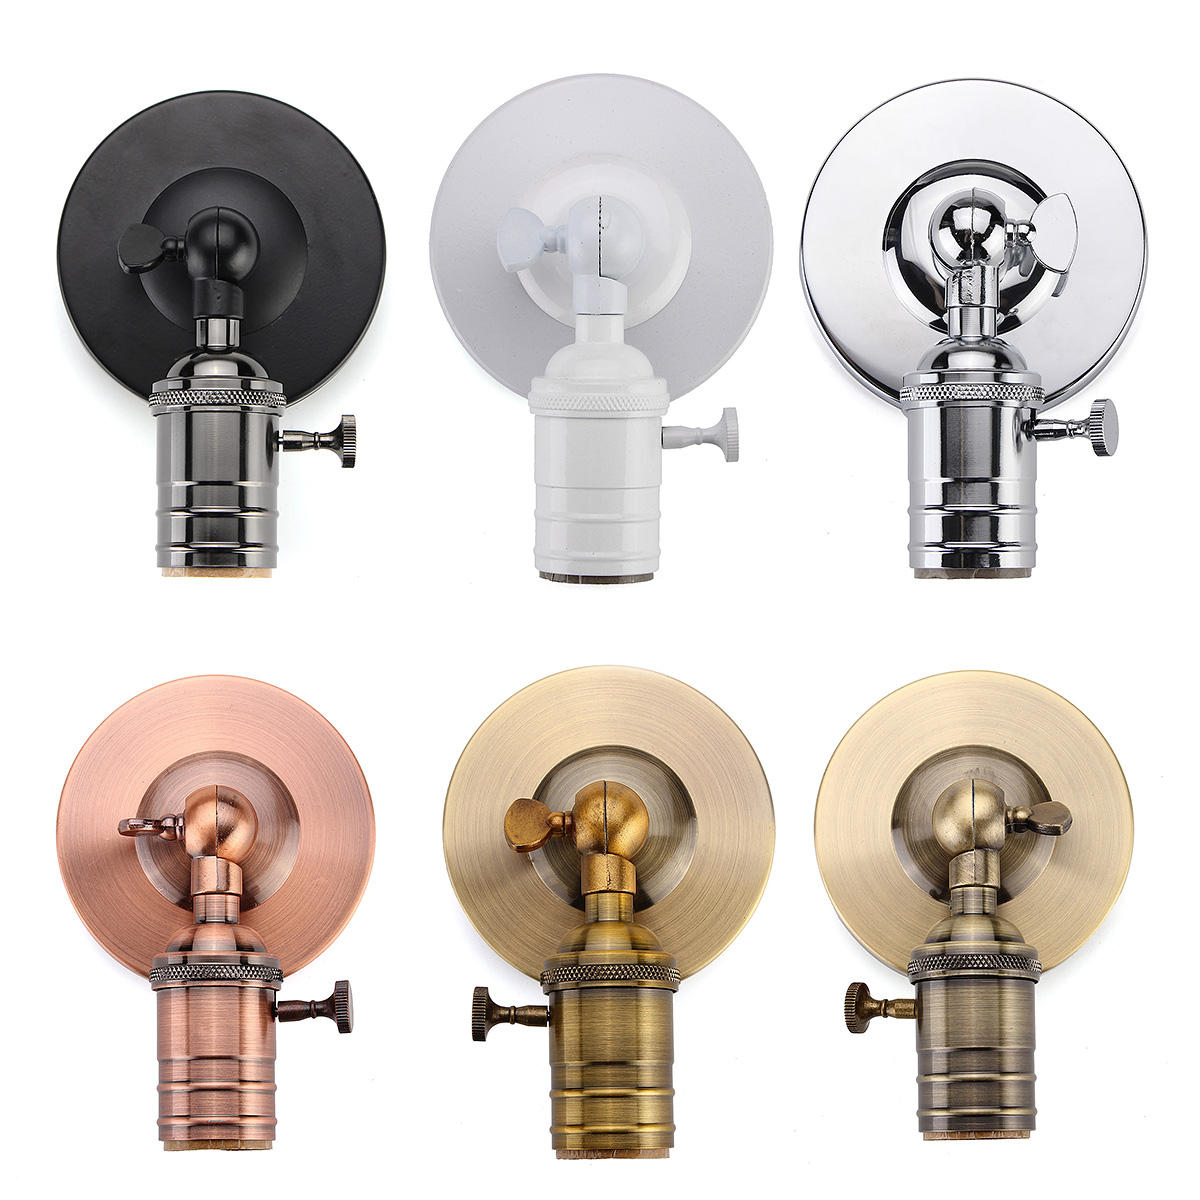 E27/E26 Modern Edison Vintage Ceiling Light Wall Lamp Bulb Holder Socket Sconce